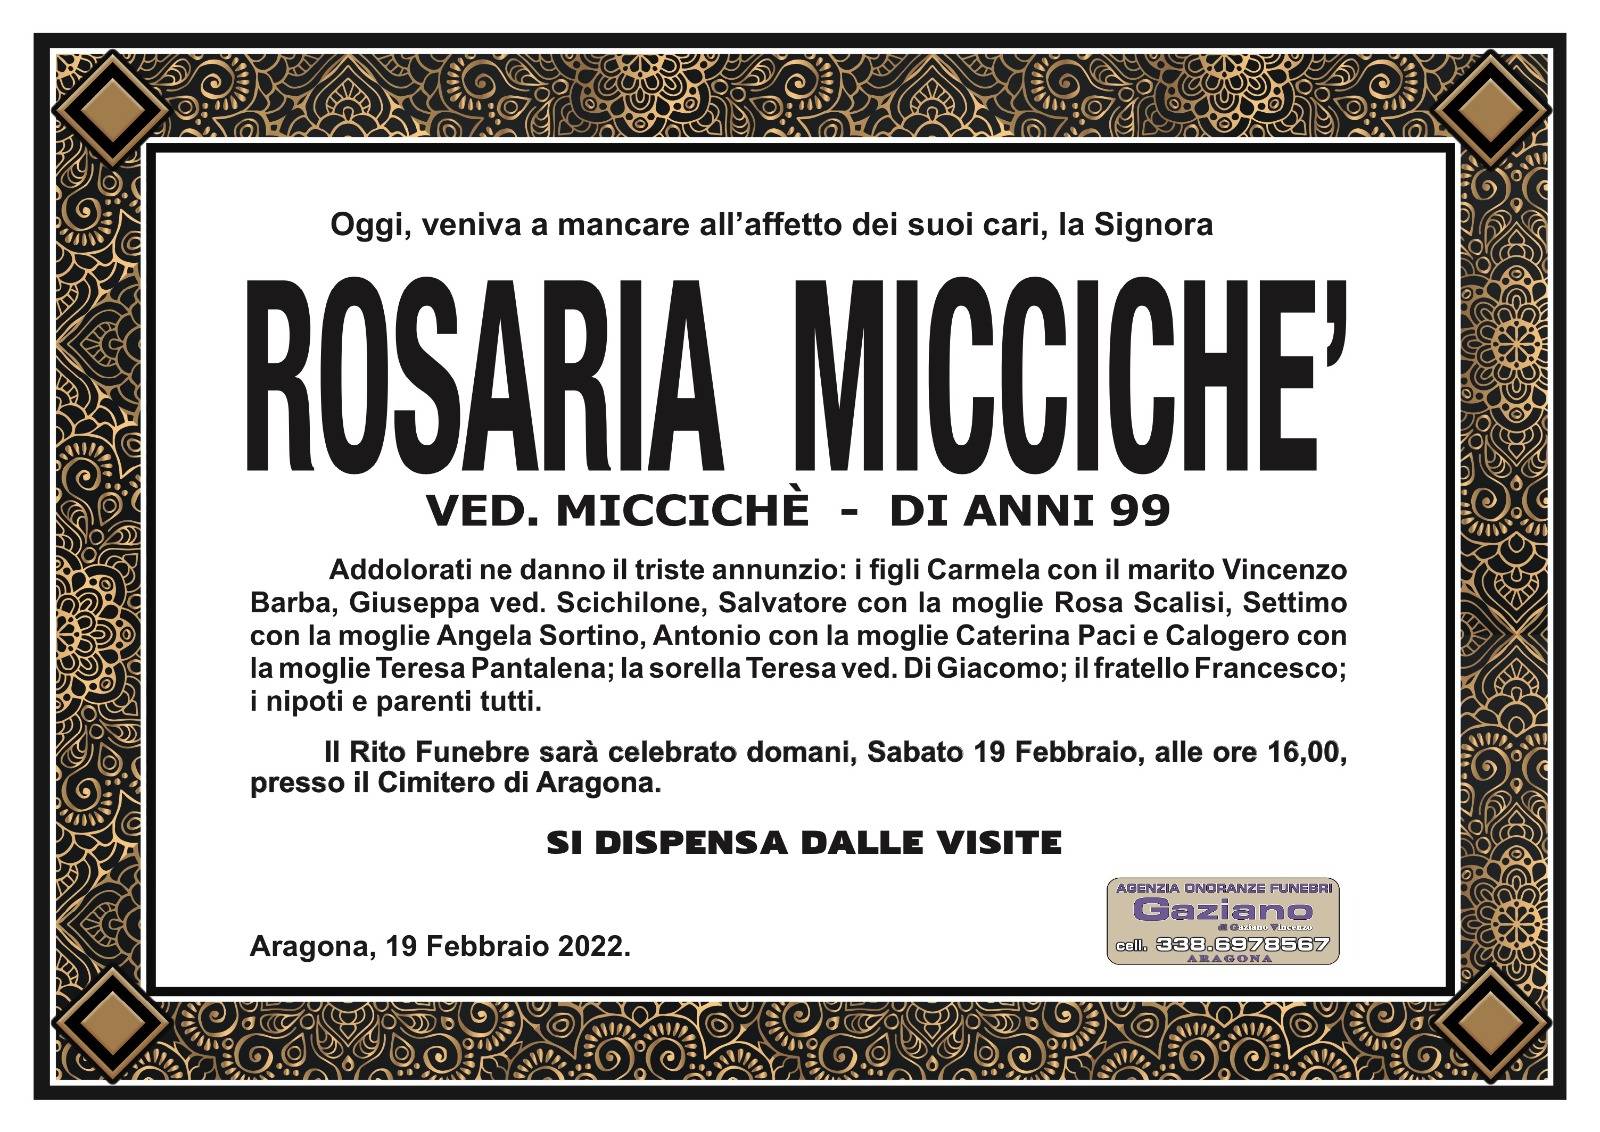 Rosaria Miccichè